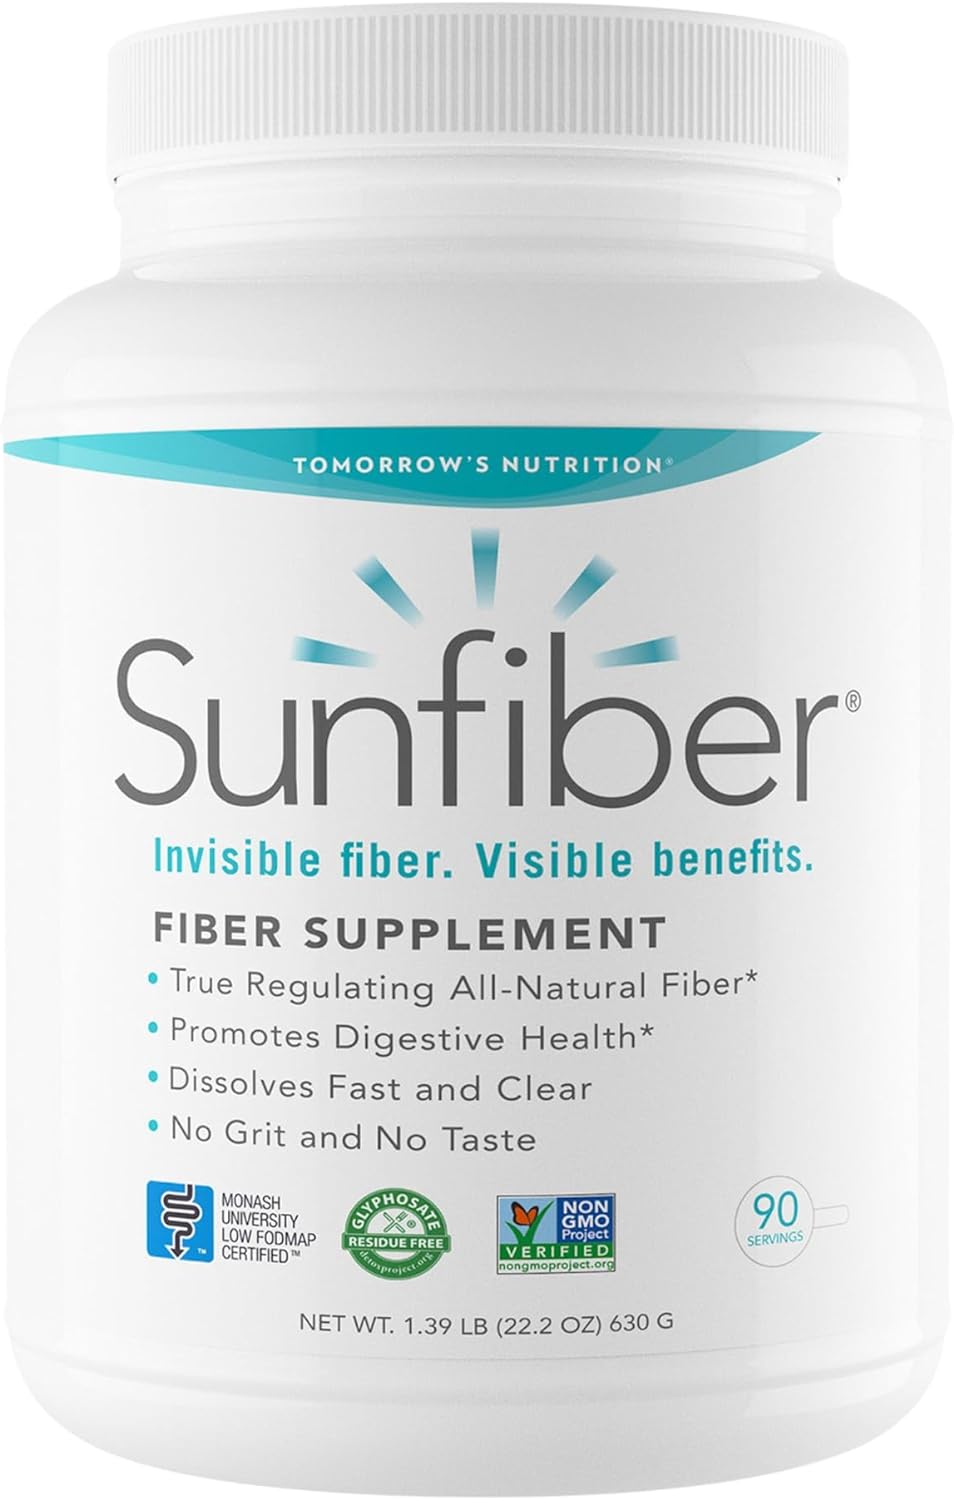 Tomorrow's Nutrition Sunfiber Prebiotic Fiber 90 Servicios 630Gr.